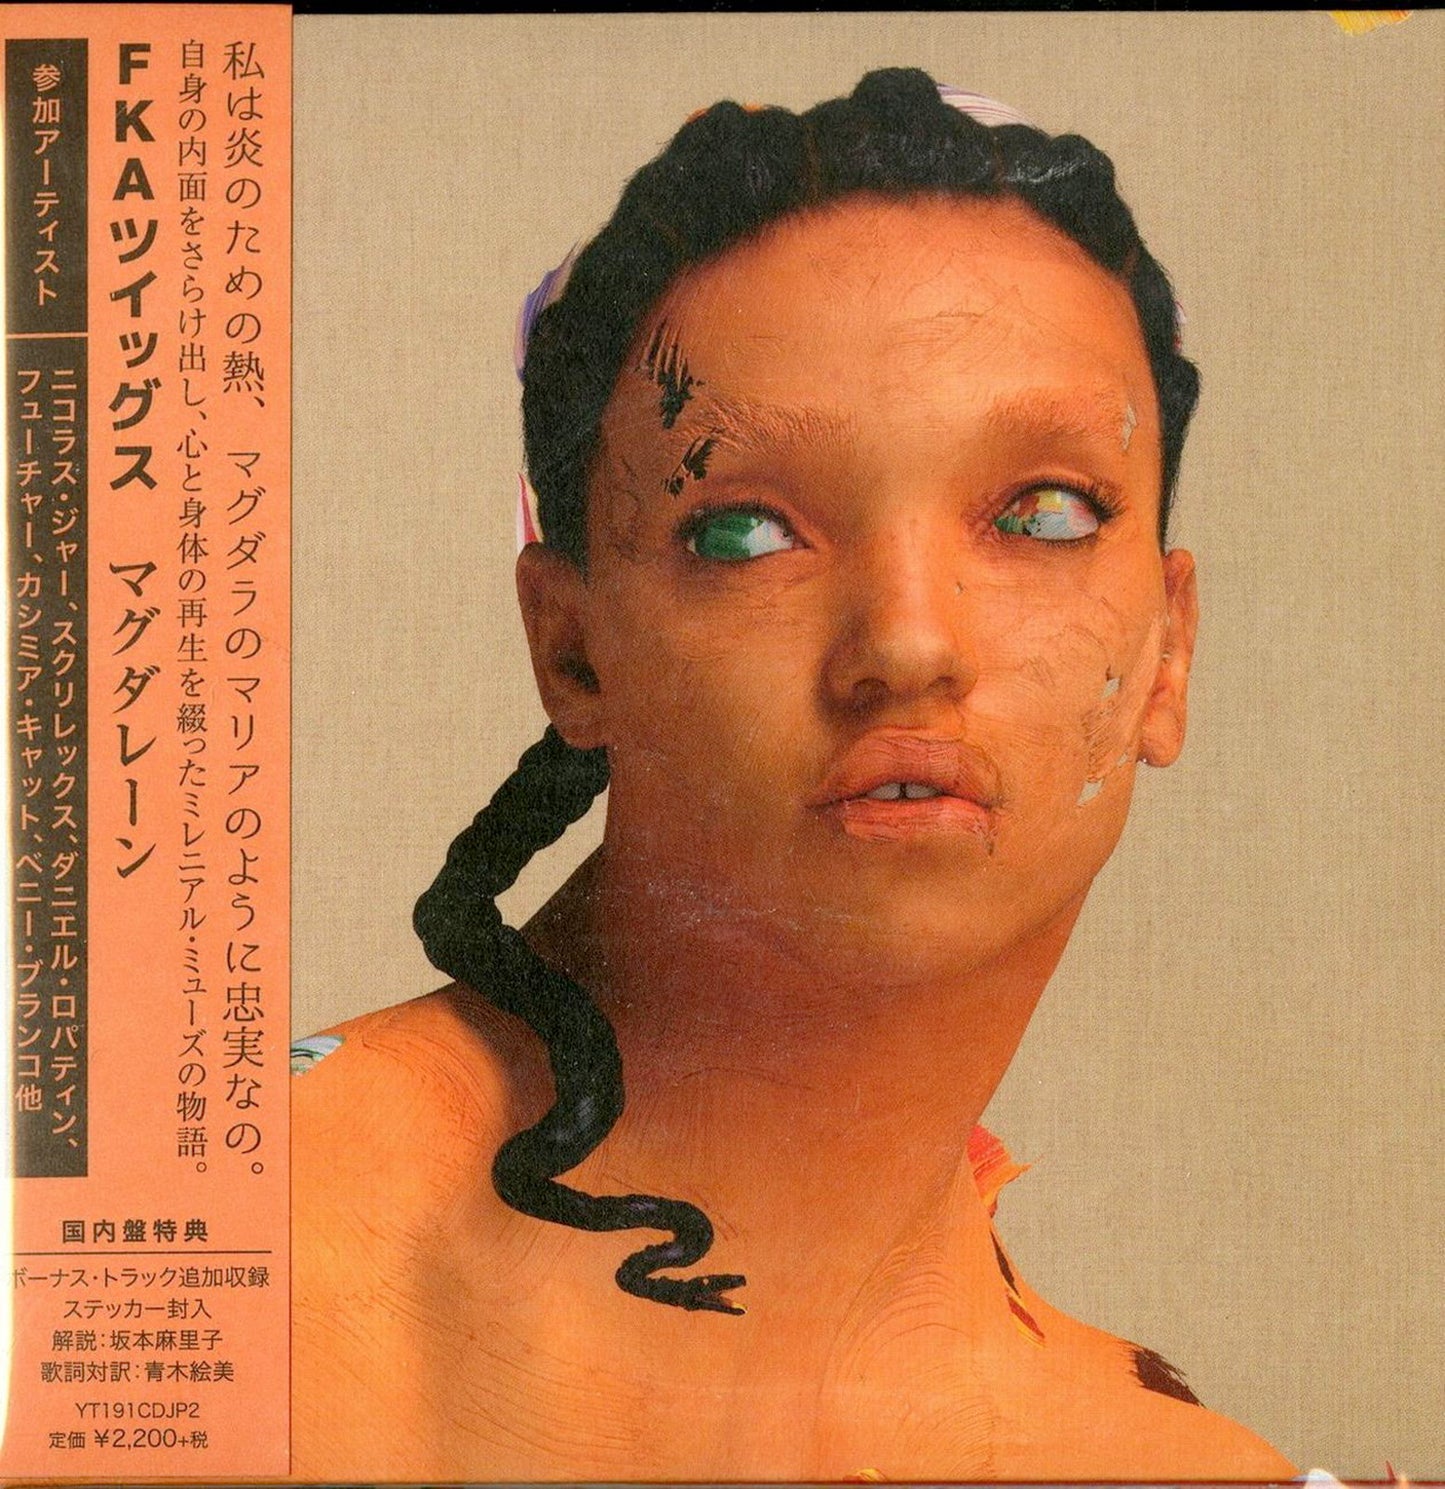 Fka Twigs - Magdalene - Japan CD